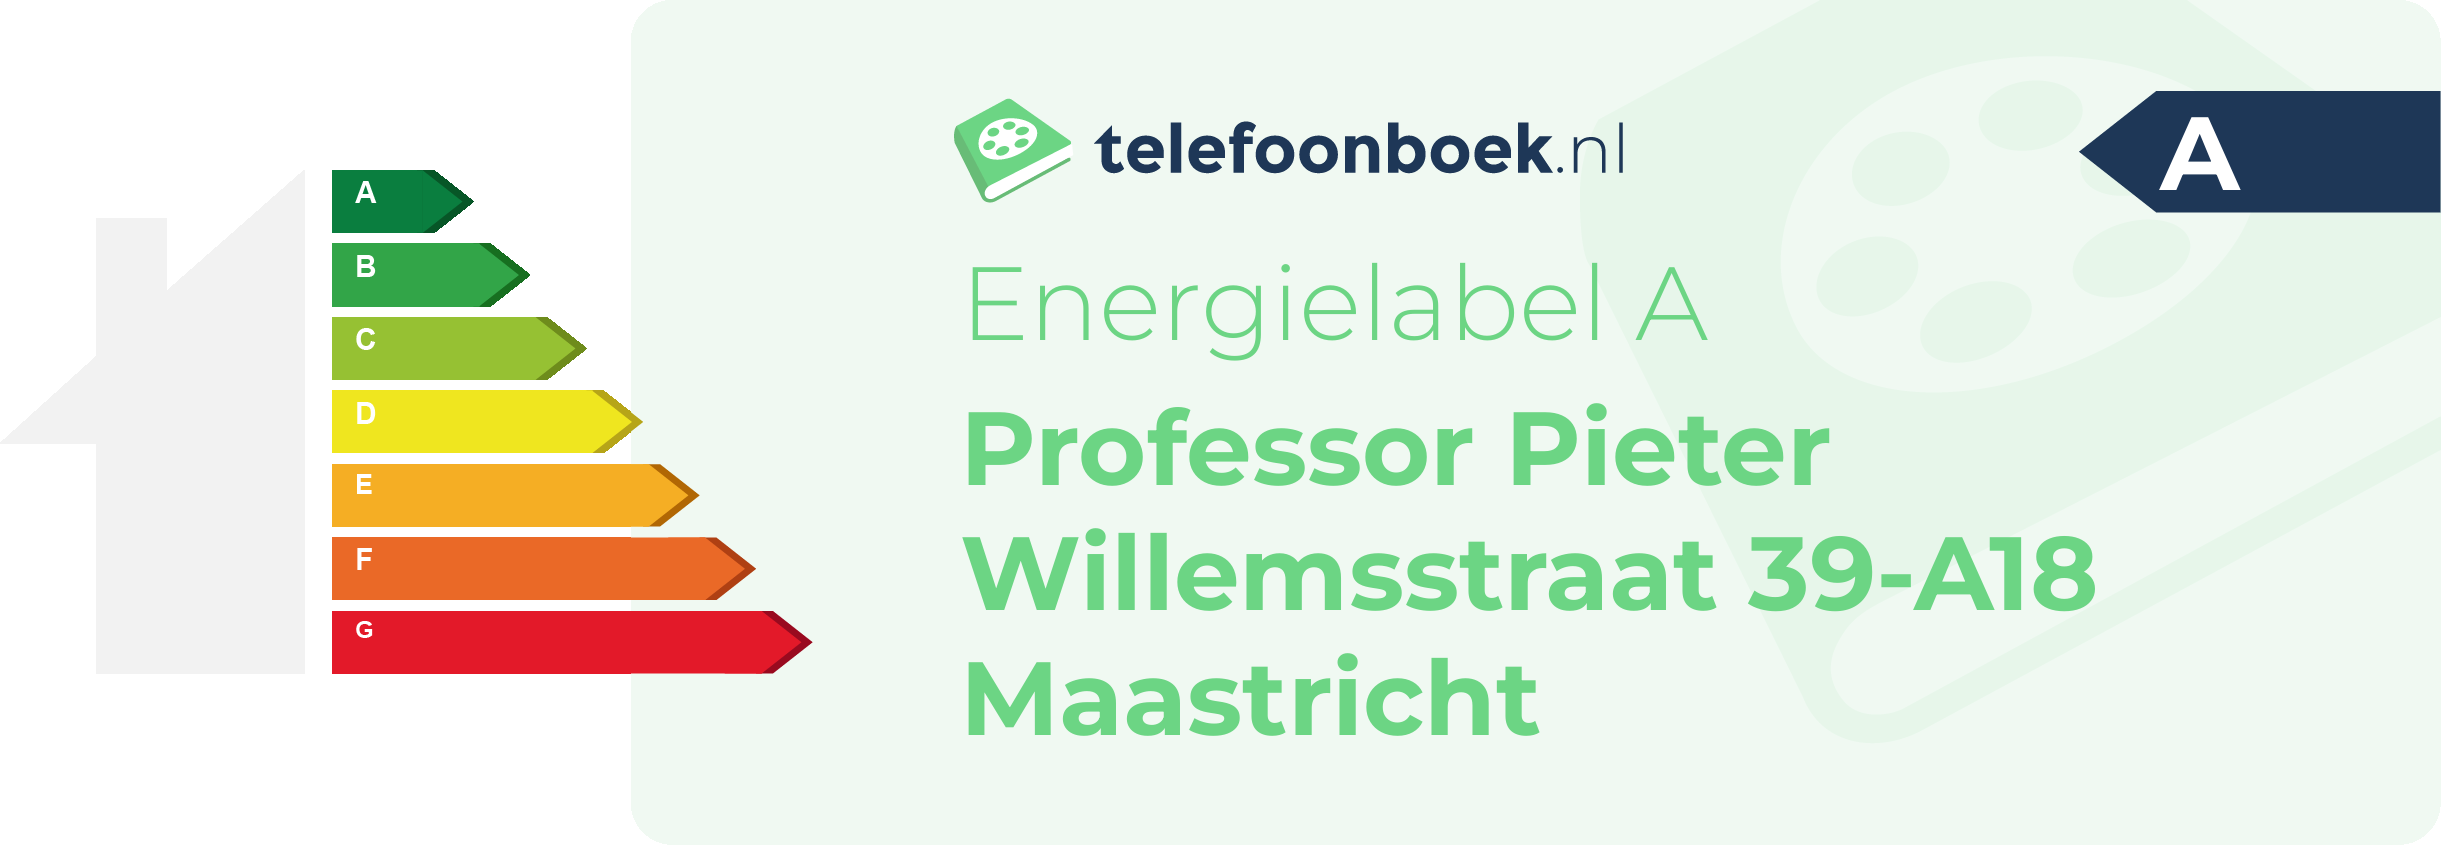 Energielabel Professor Pieter Willemsstraat 39-A18 Maastricht